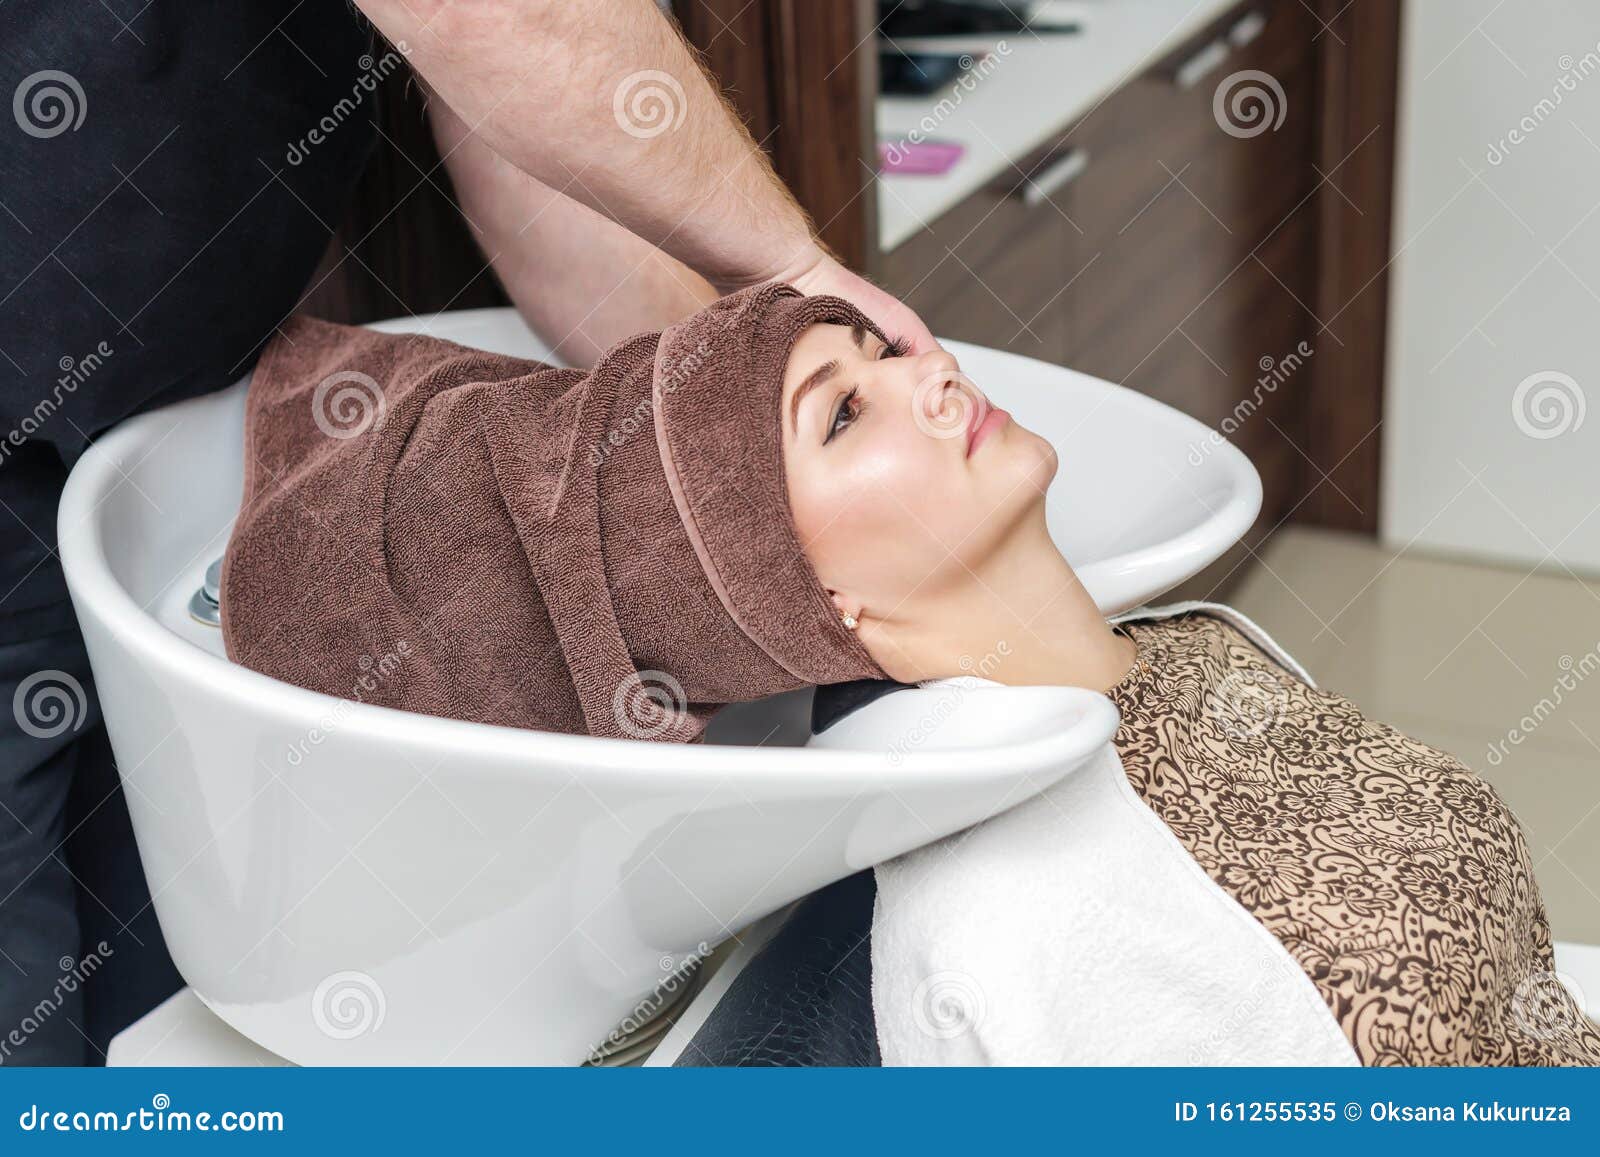 Home Cloud Towel ZICZAC Towel Colorful Coral Velvet Women Bath Towel Sets  Soft Fluffy face Wash